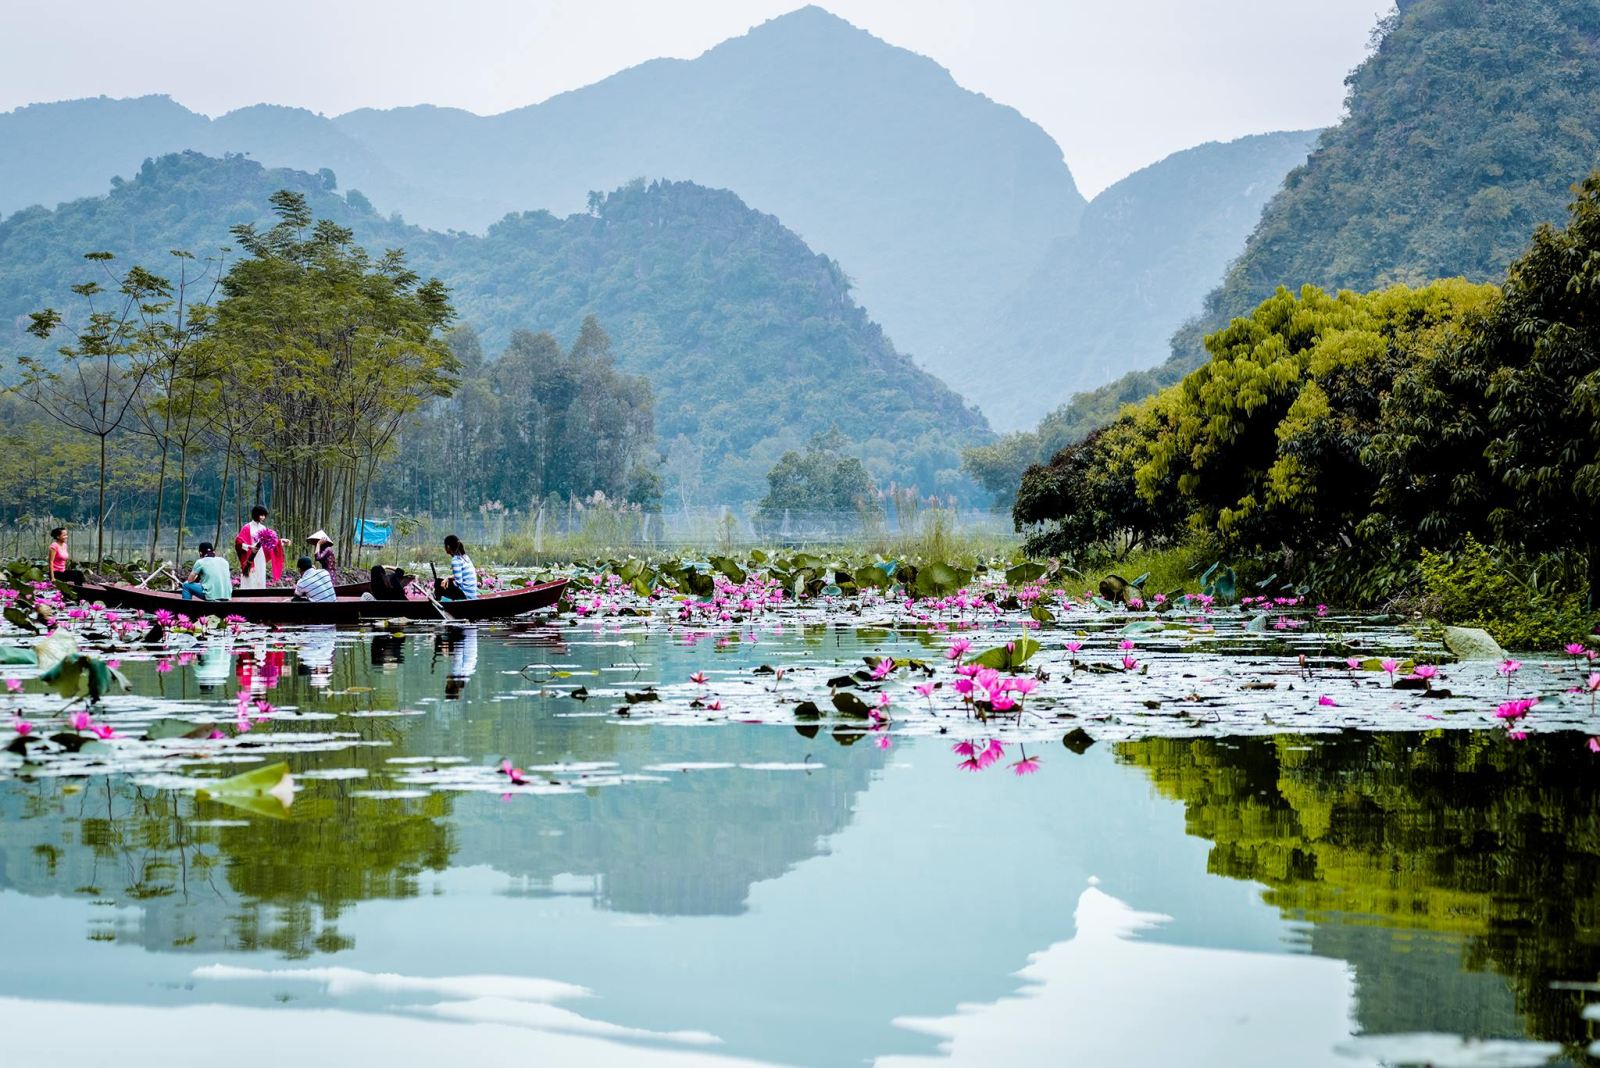 Hình ảnh quê hương sông núi Việt Nam